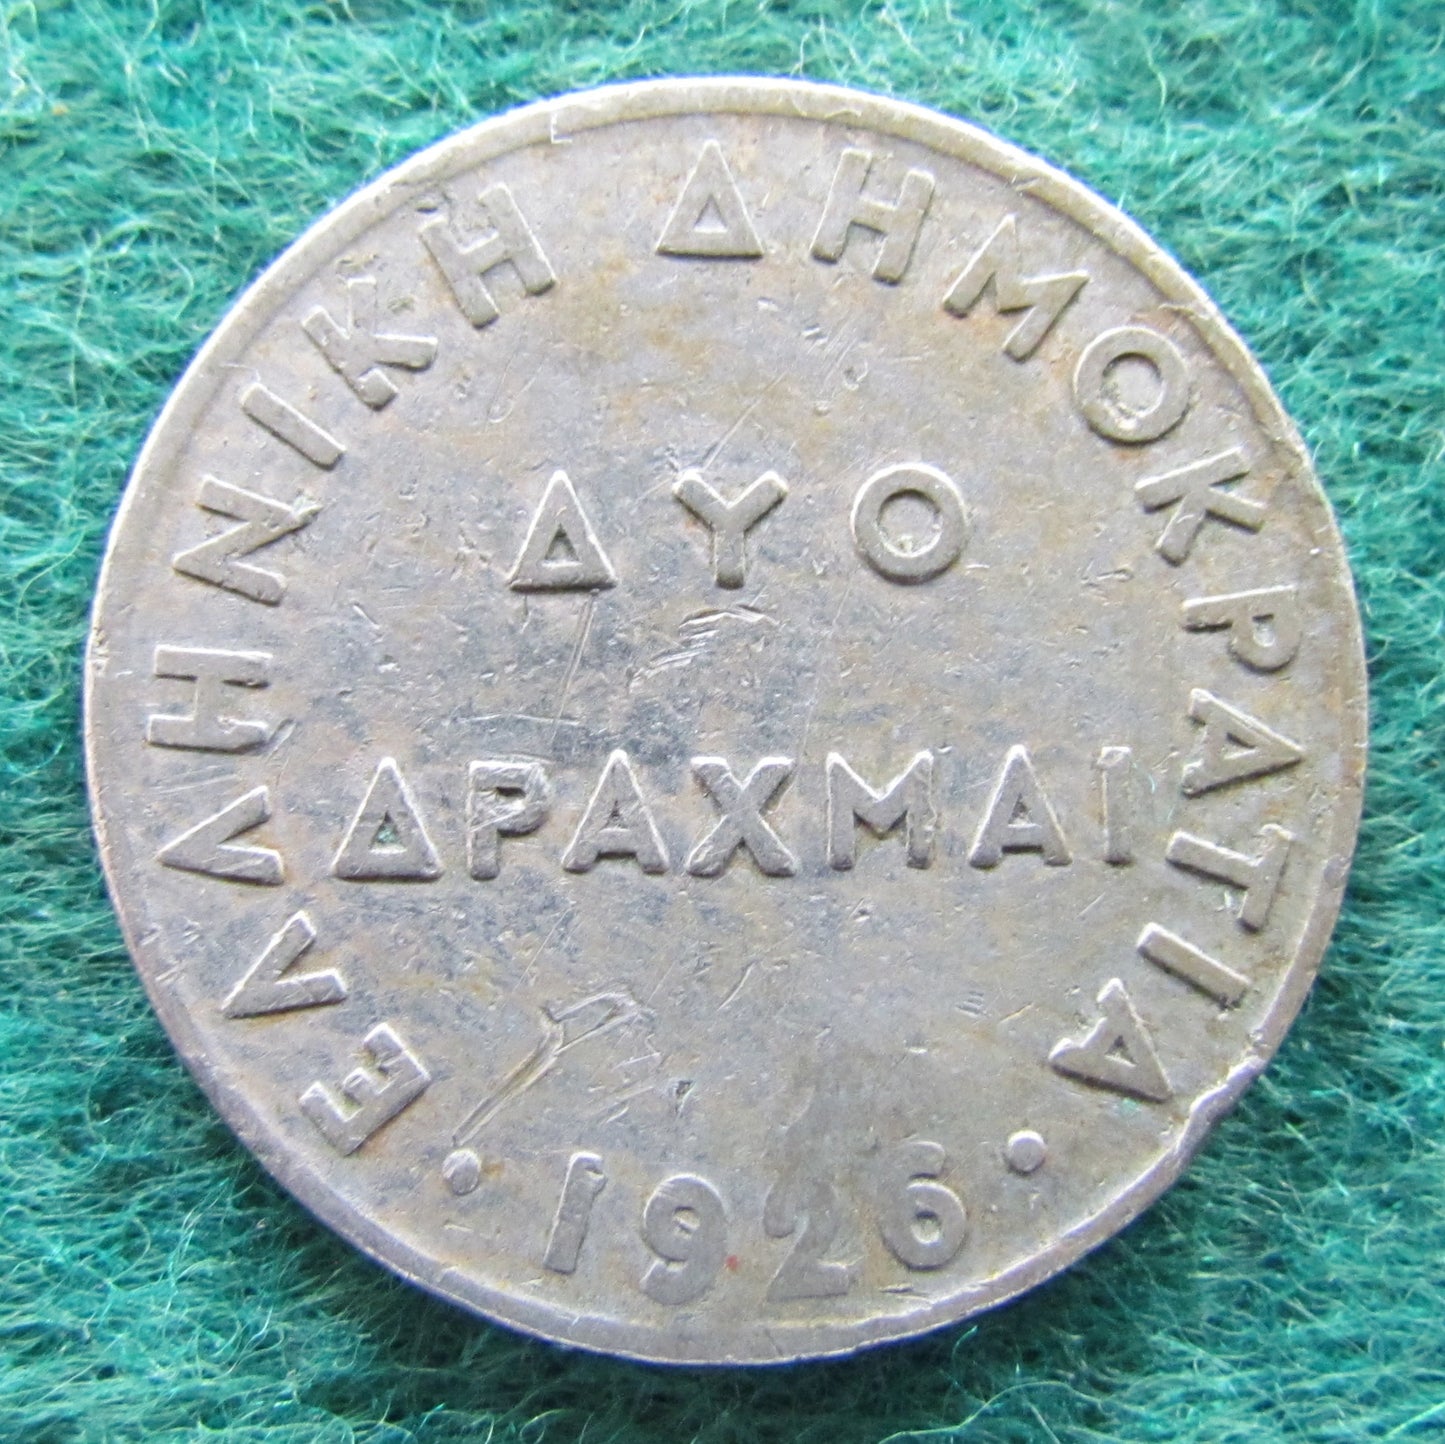 Greek 1926 2 Drachma Coin